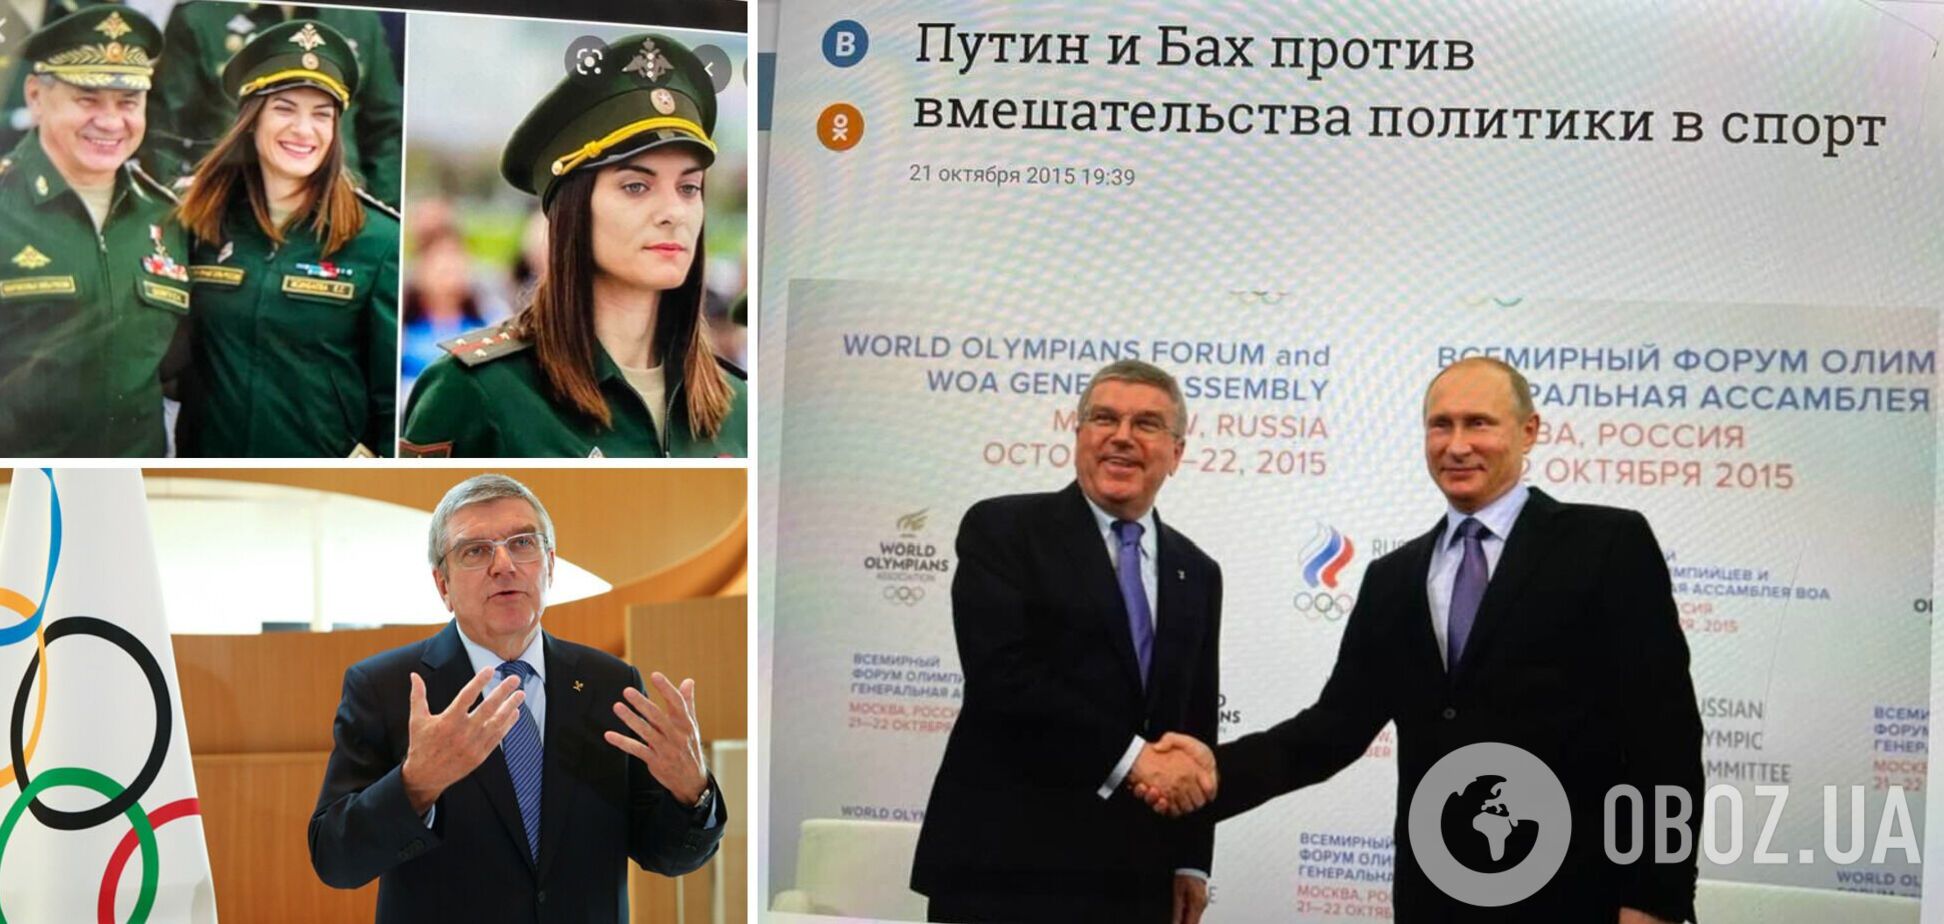 И ты, Бах: глава МОК поддержал 'невинный' русский народ